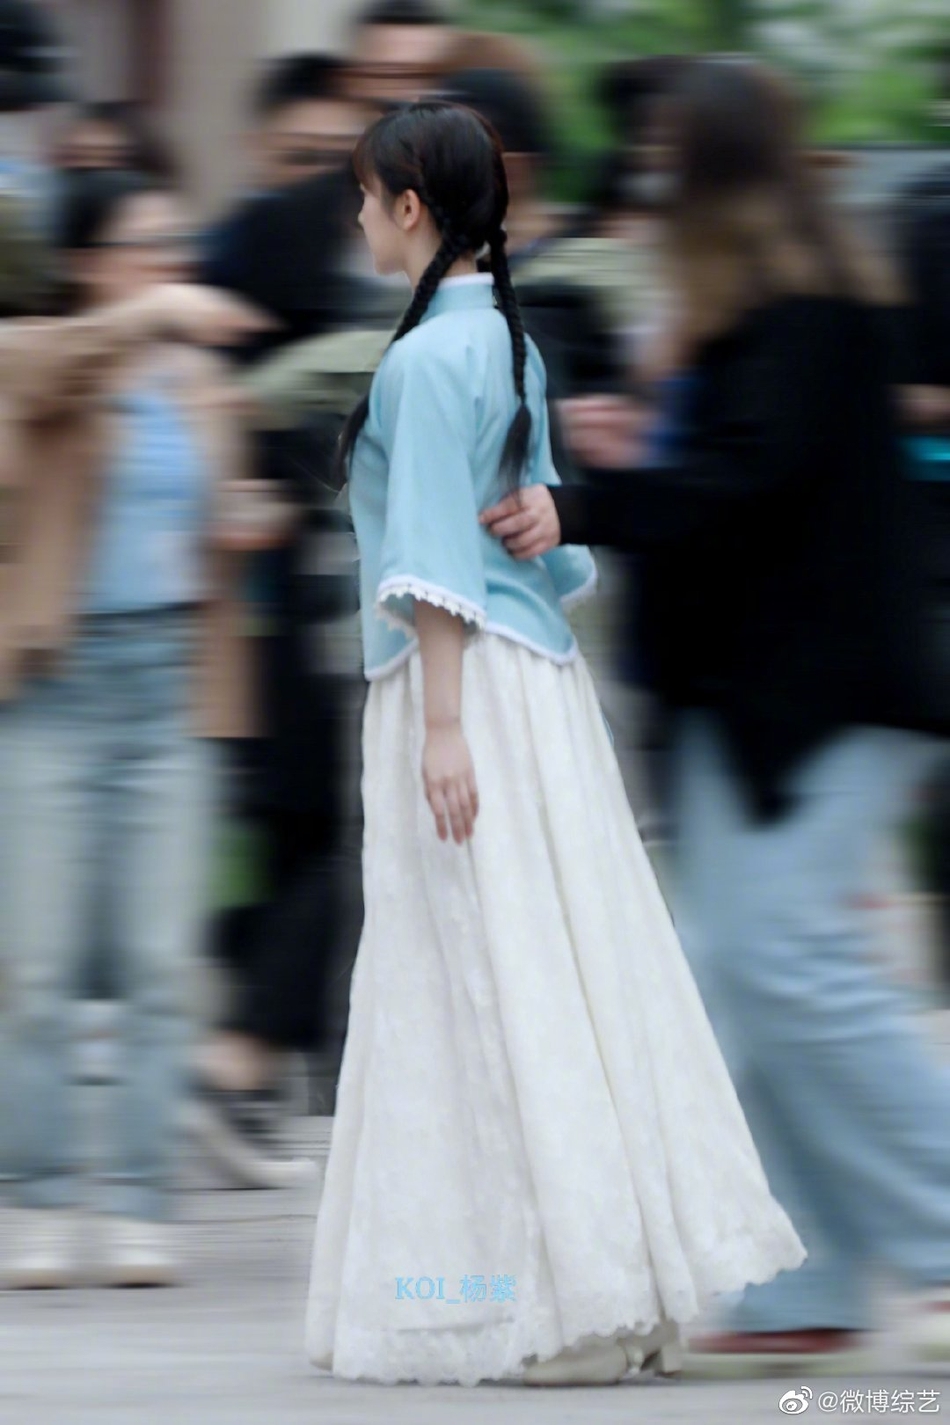 杨紫民国风造型少女感满满 走路微提裙摆优雅有气质